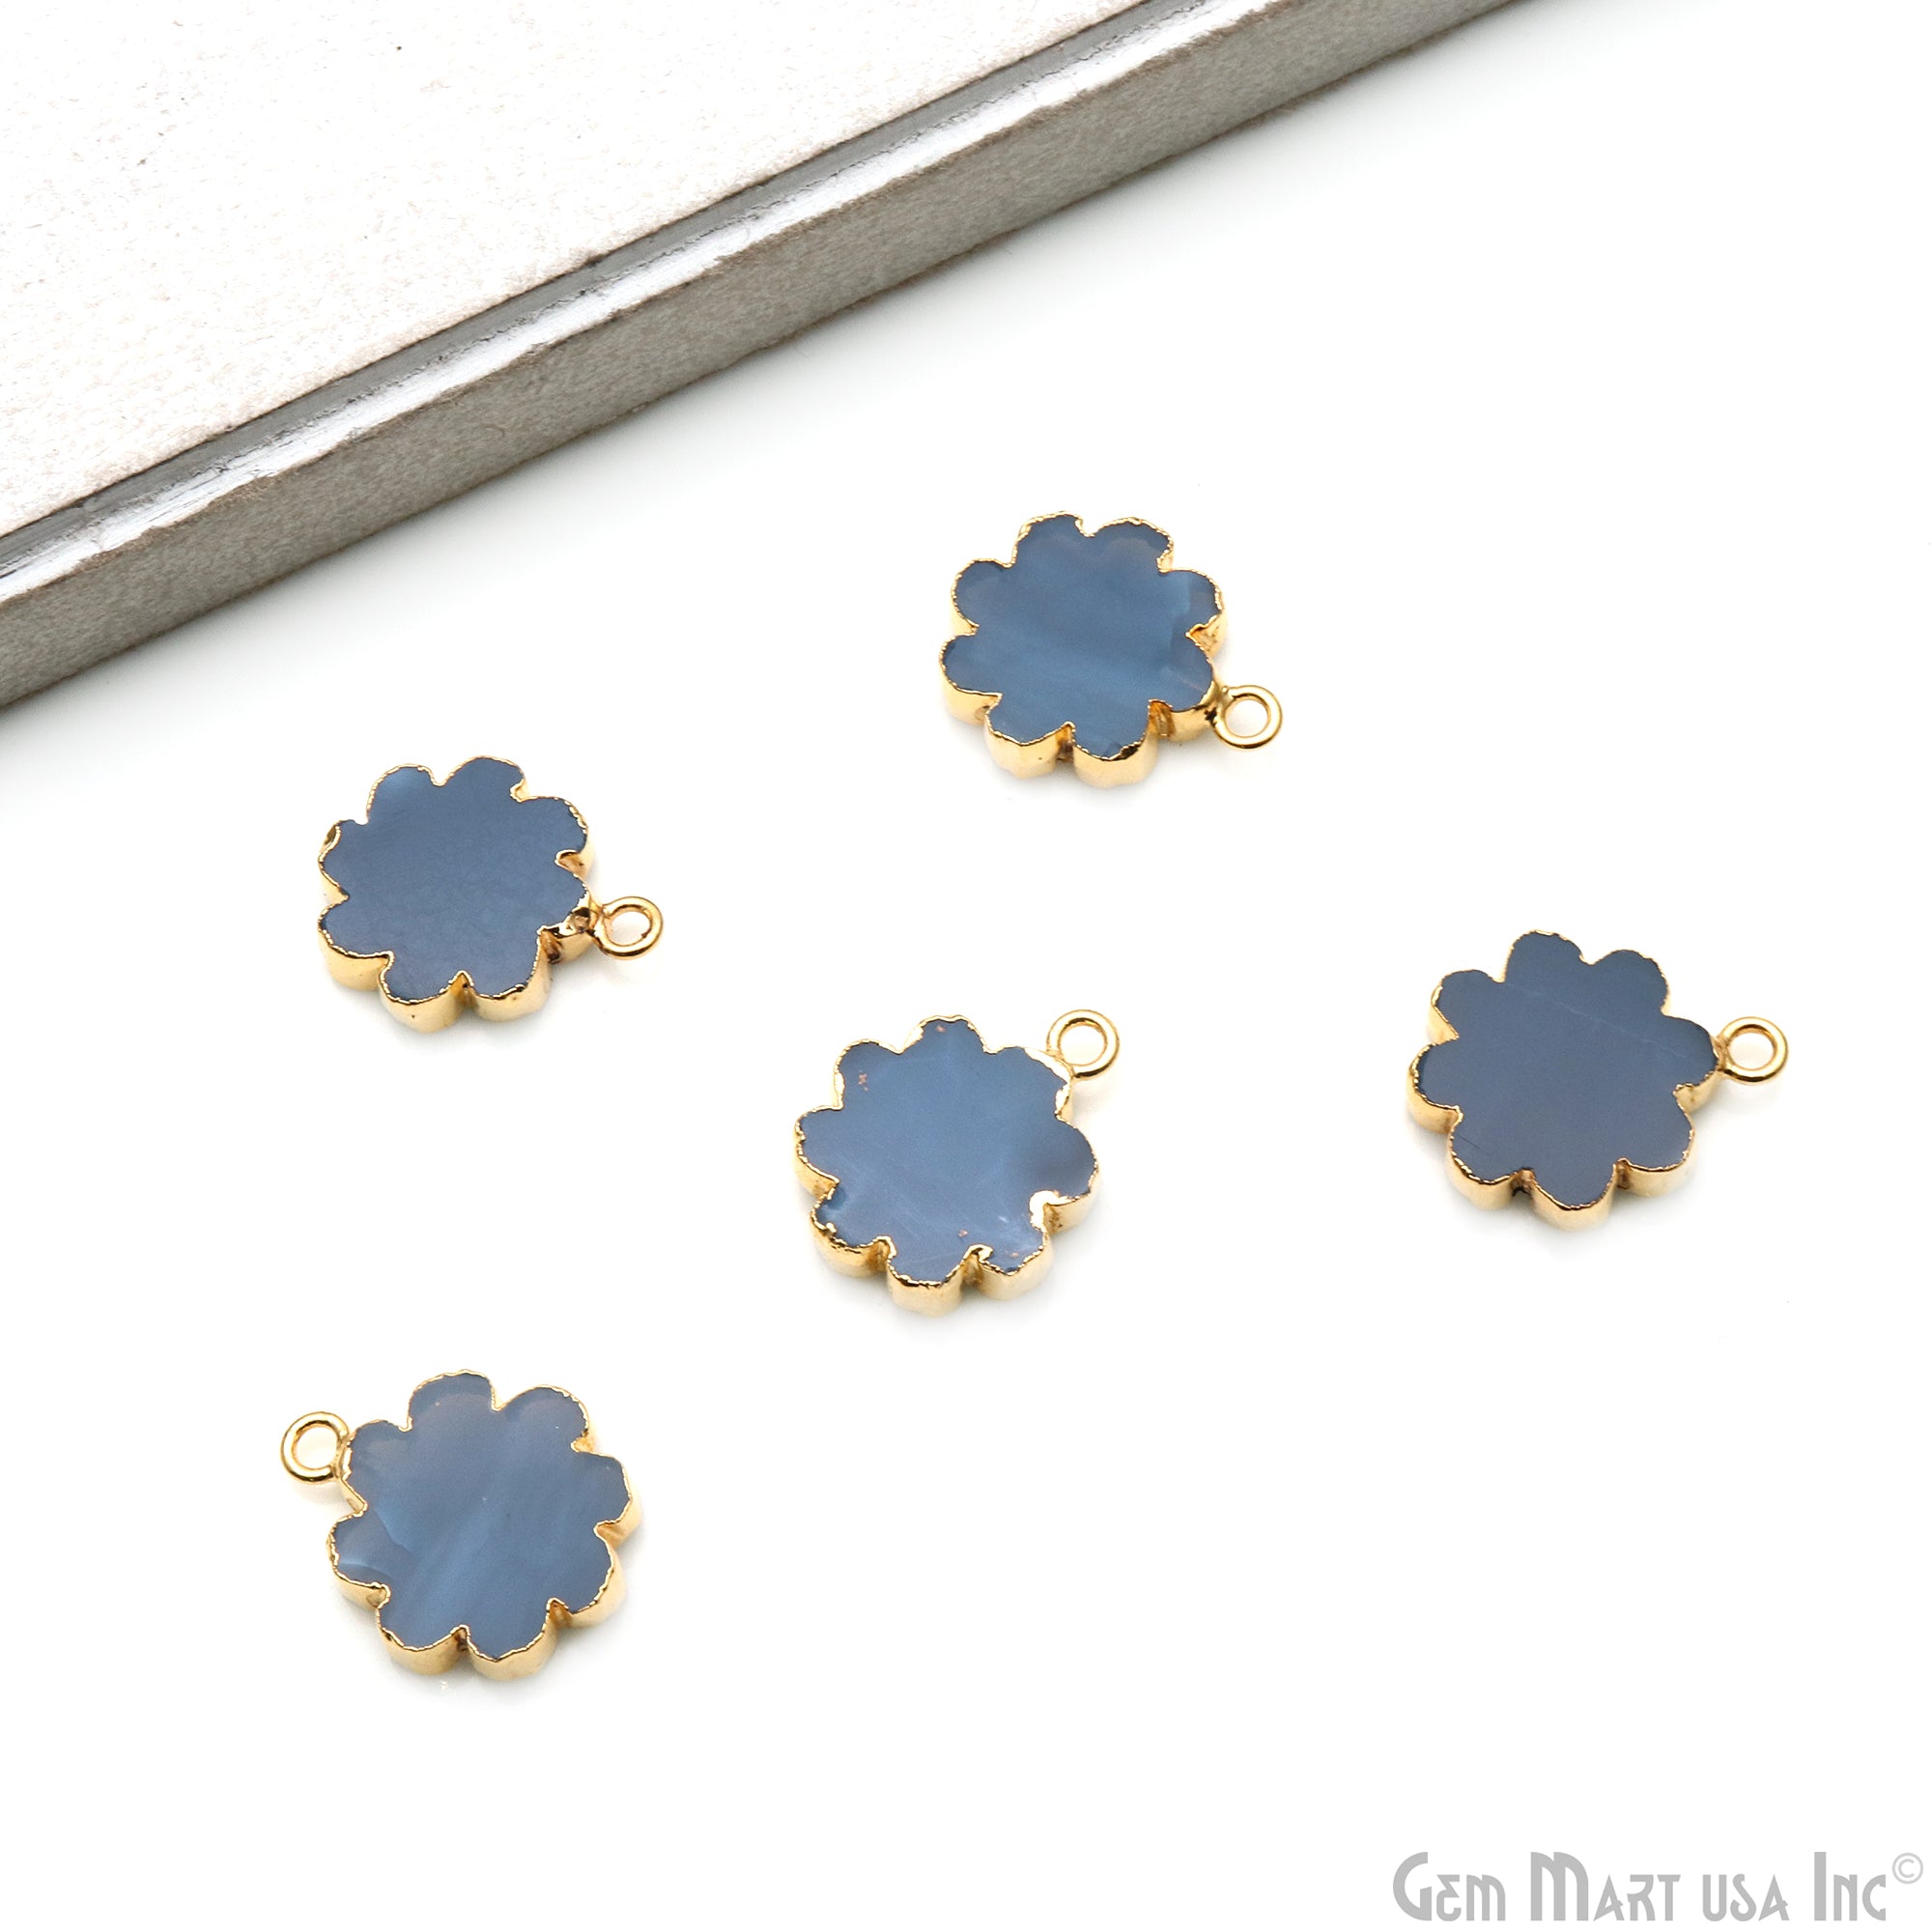 Flower Shape Gemstone Charm 20x14mm Gemstone Gold Edged Connector Charm